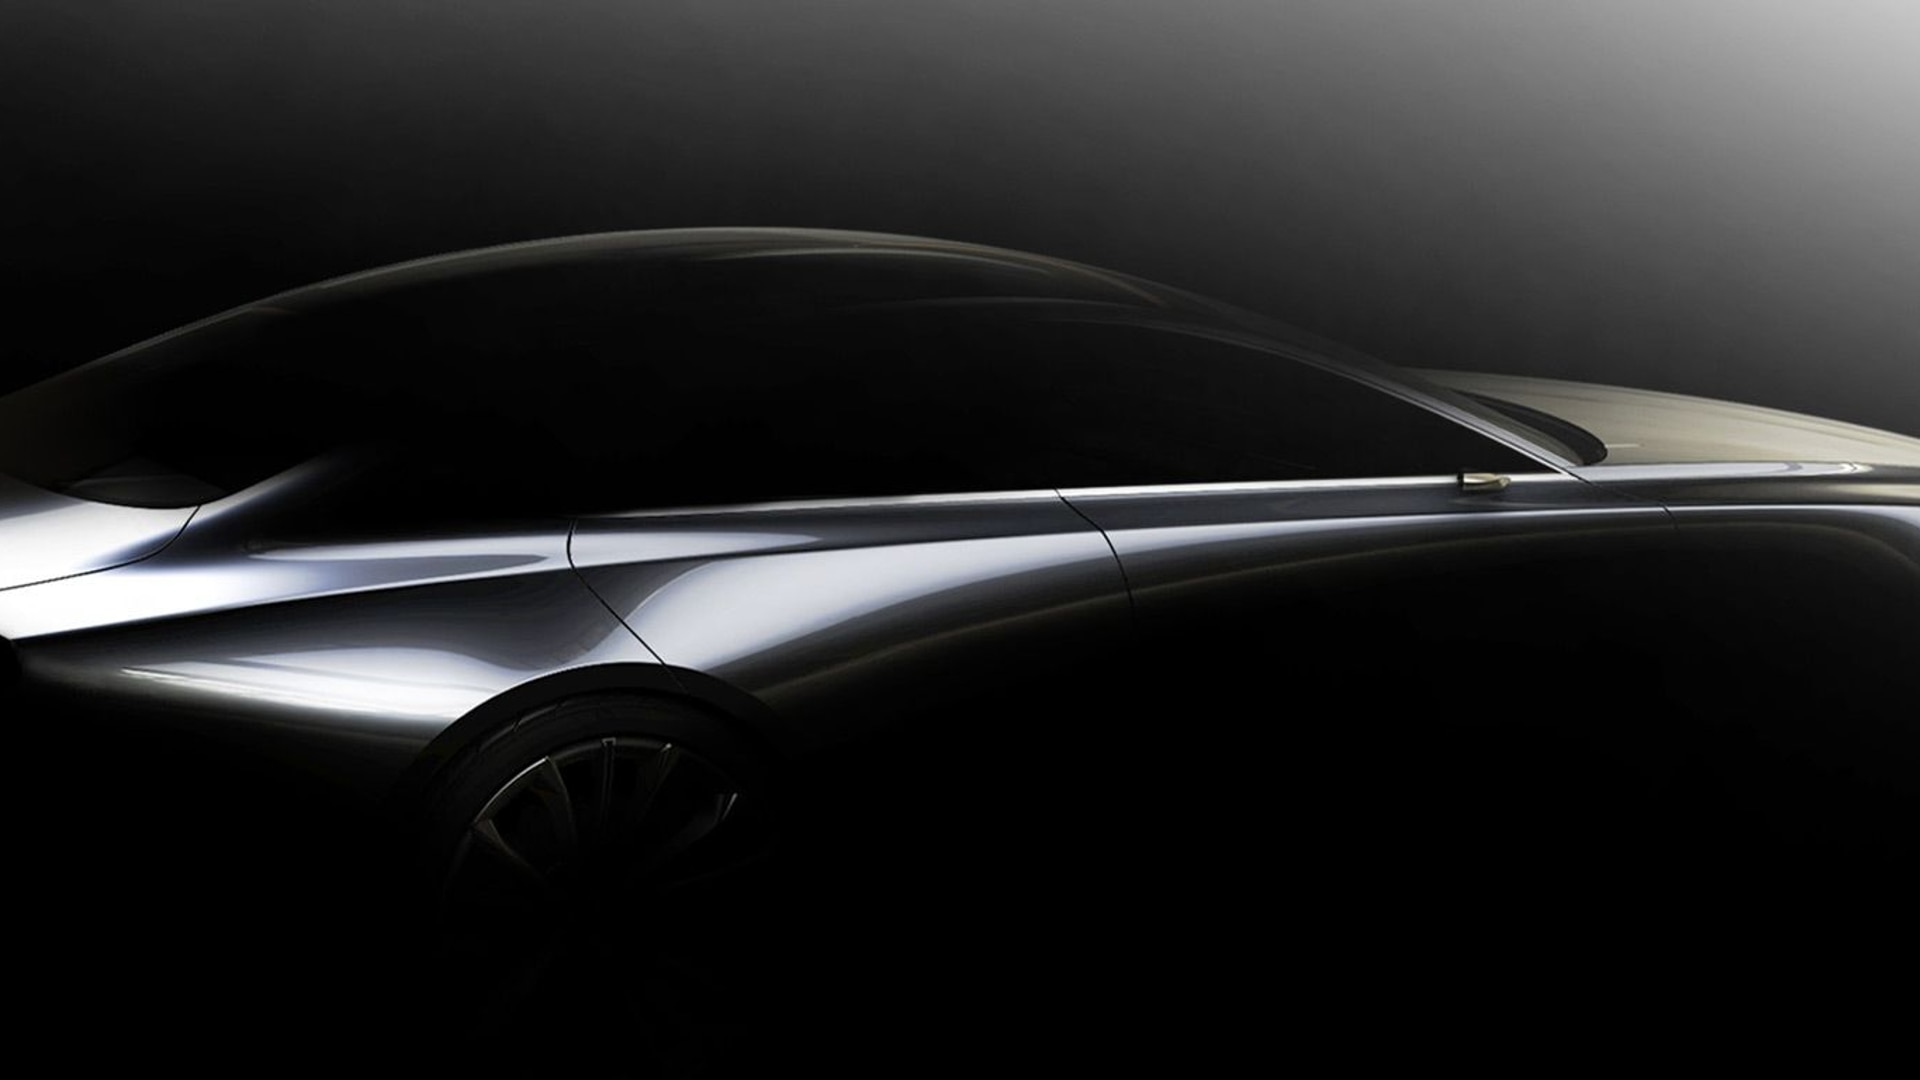 Teaser for Mazda design concept debuting at 2017 Tokyo Motor Show